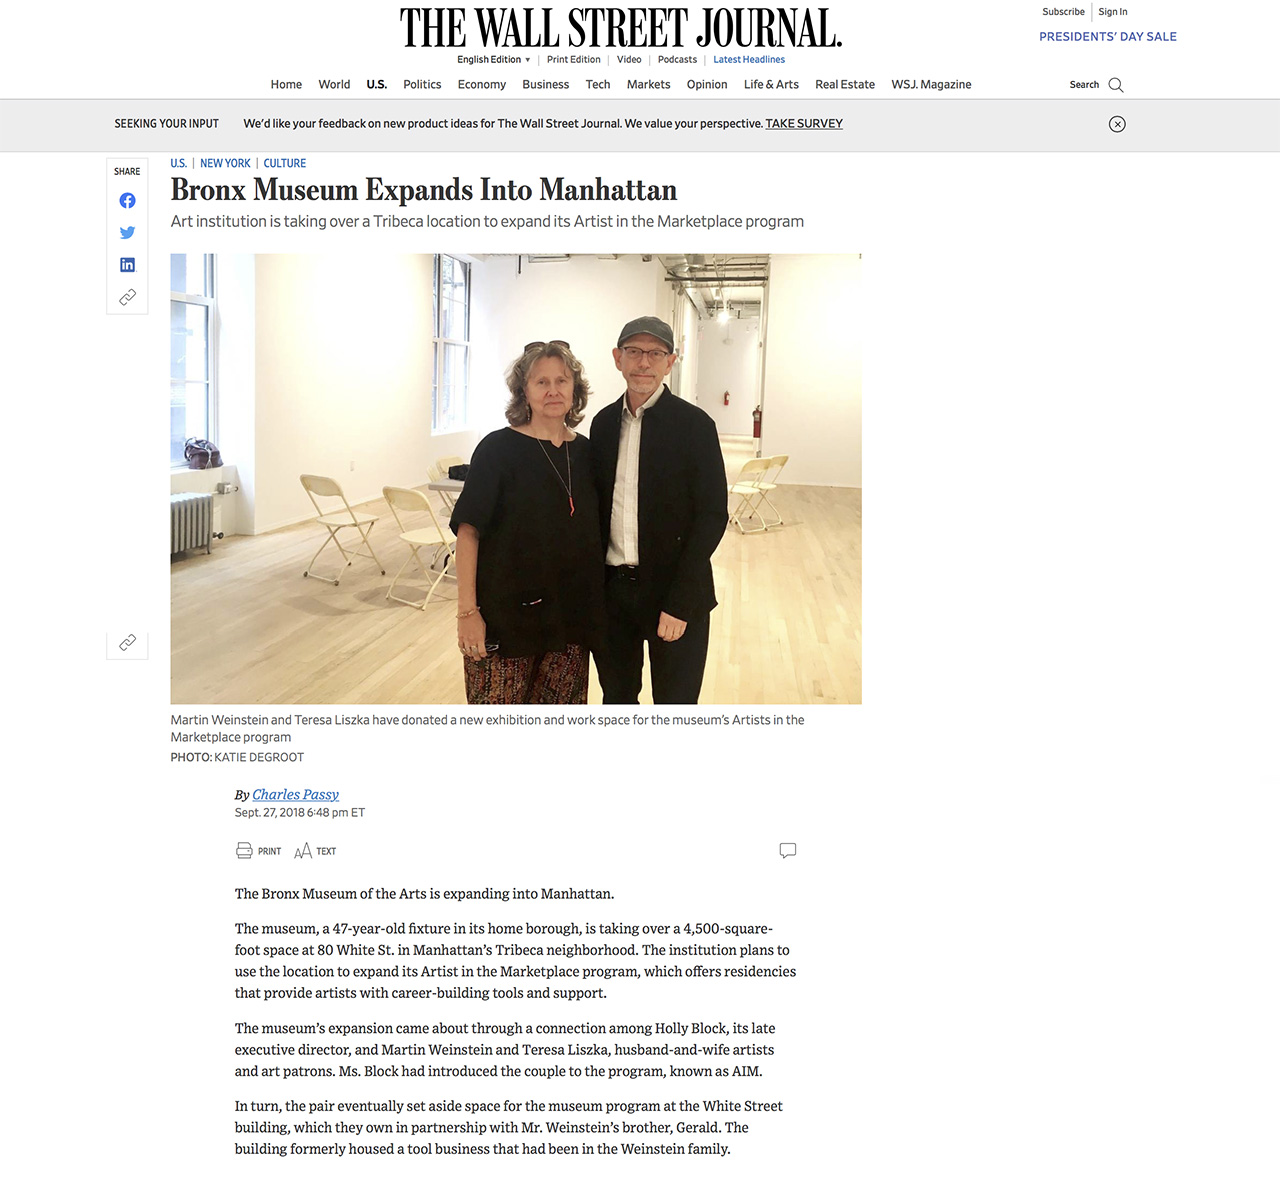 The Wall Street Journal Bronx Museum expands into Manhattan